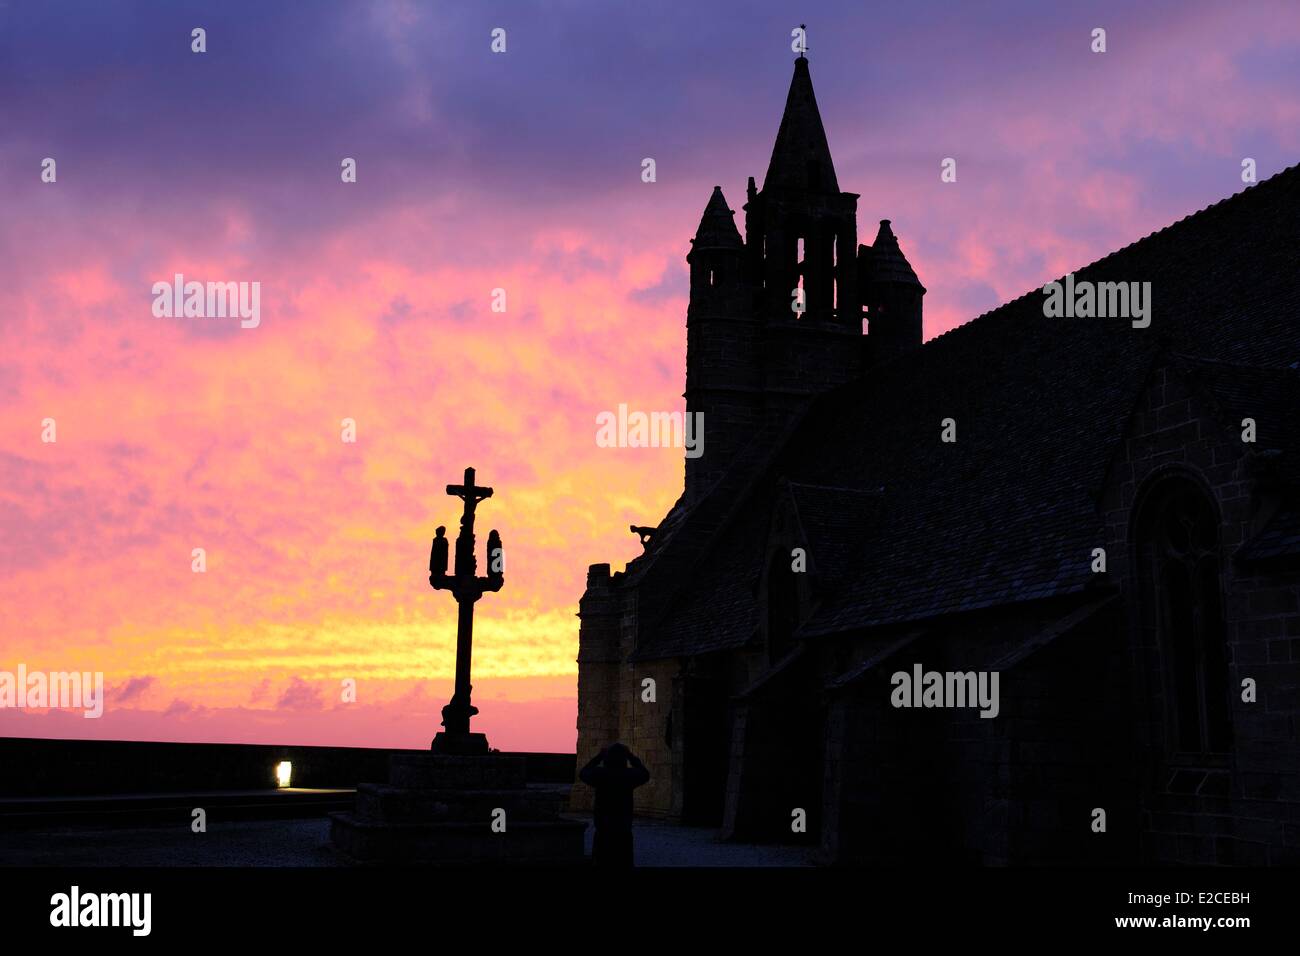 La France, Finistère, pays bigouden, la chapelle Notre Dame de la Joie, xve siècle, sur la presqu'île de Penmarch Banque D'Images